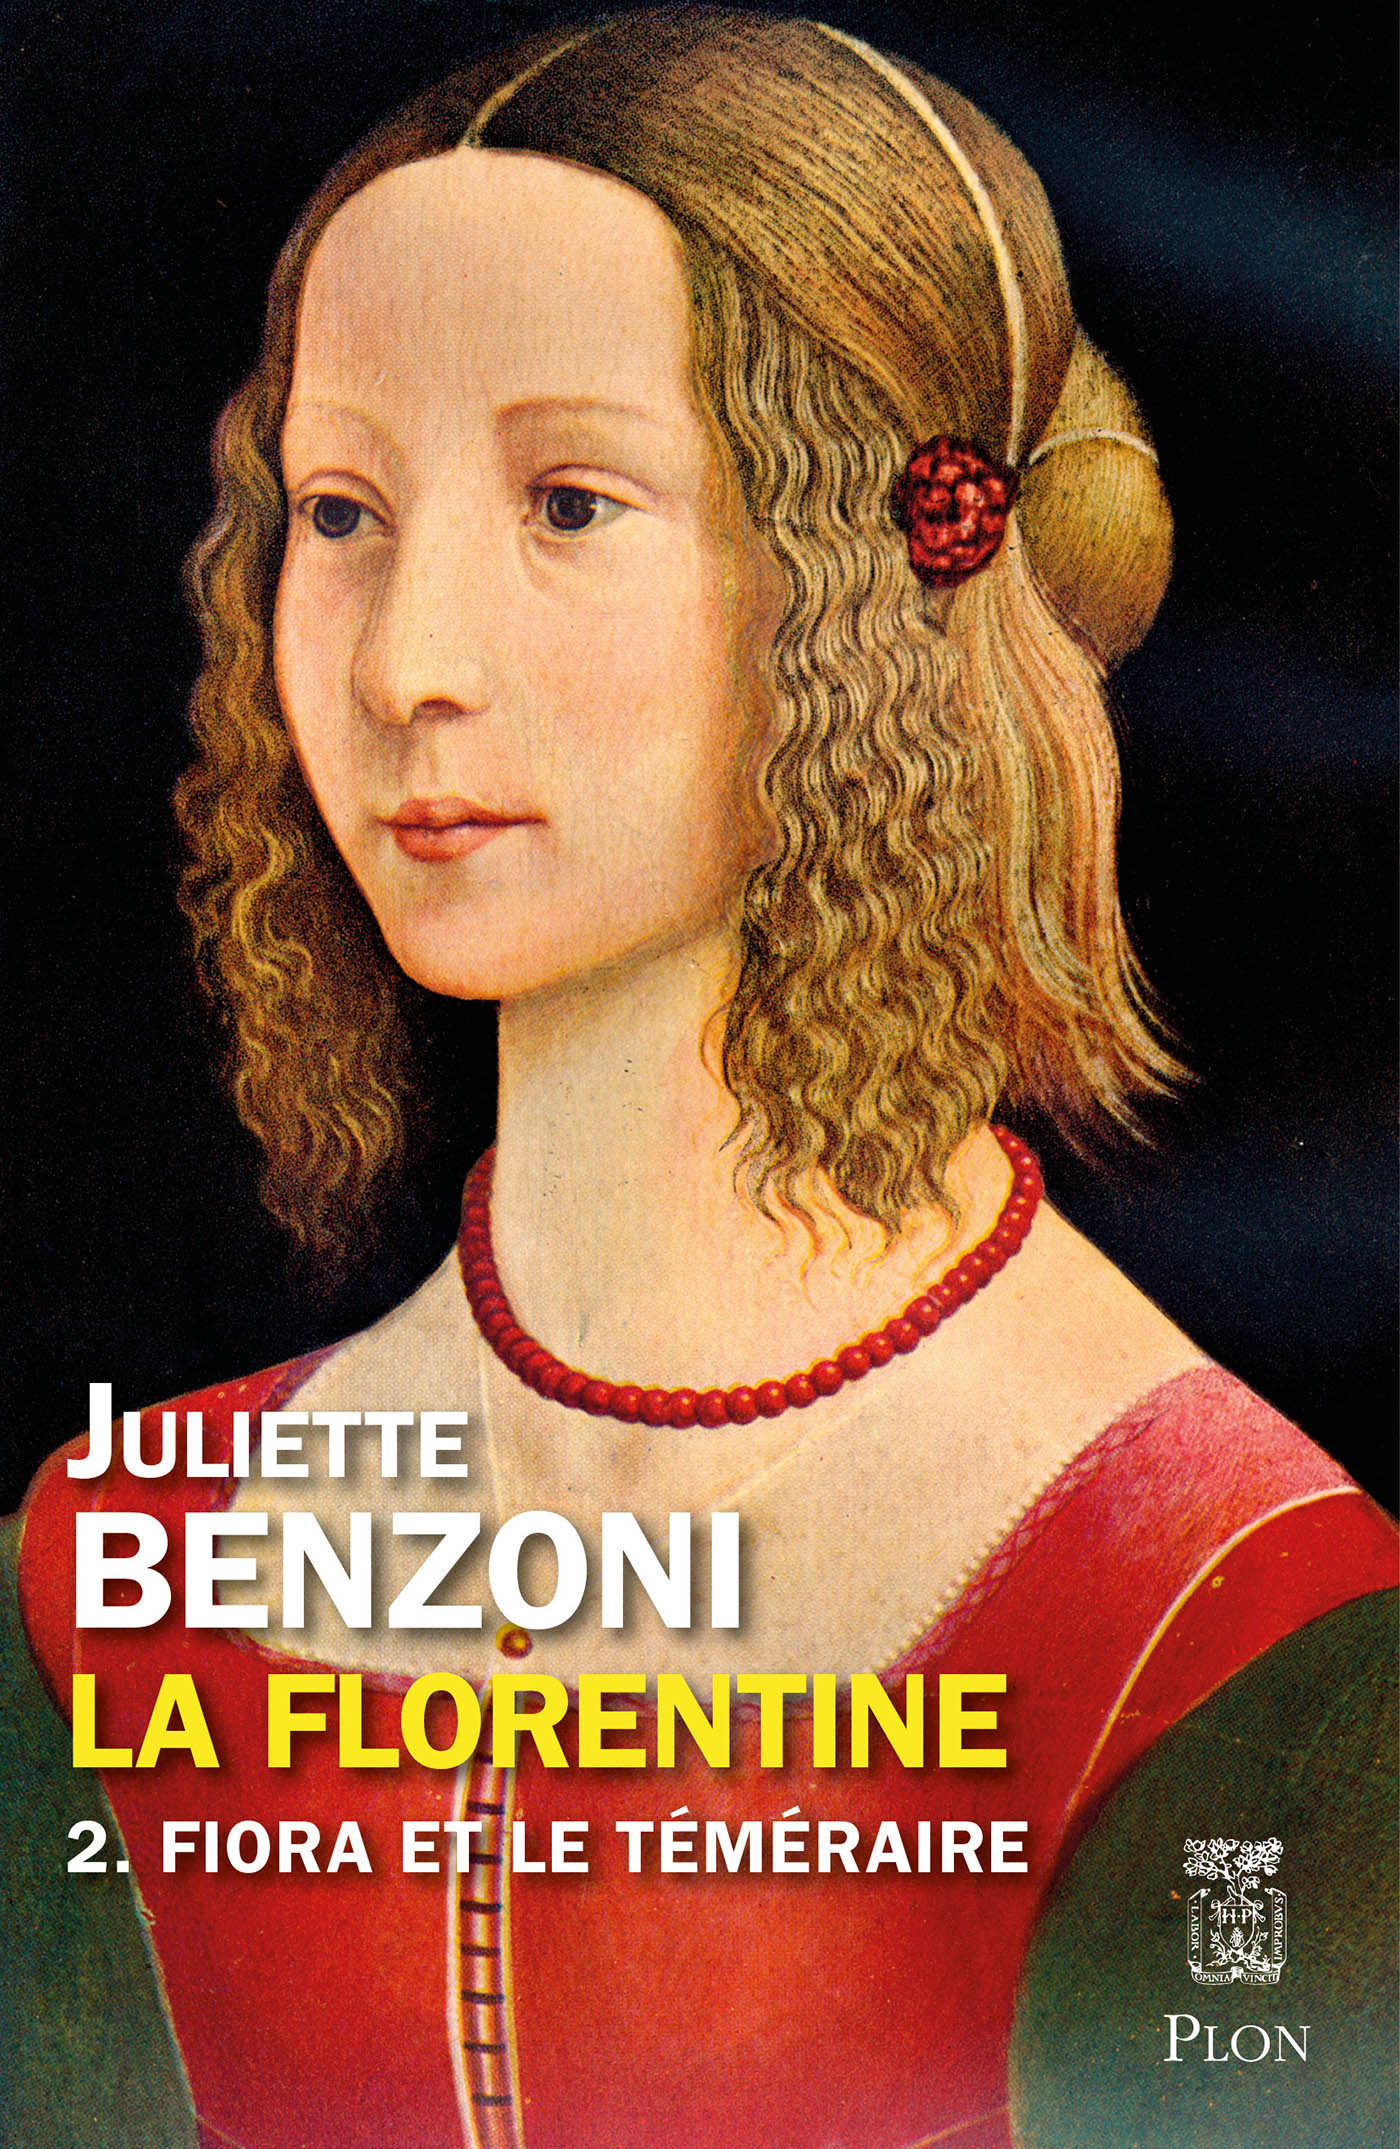 Afficher "La Florentine tome 2 - Fiora et le téméraire"